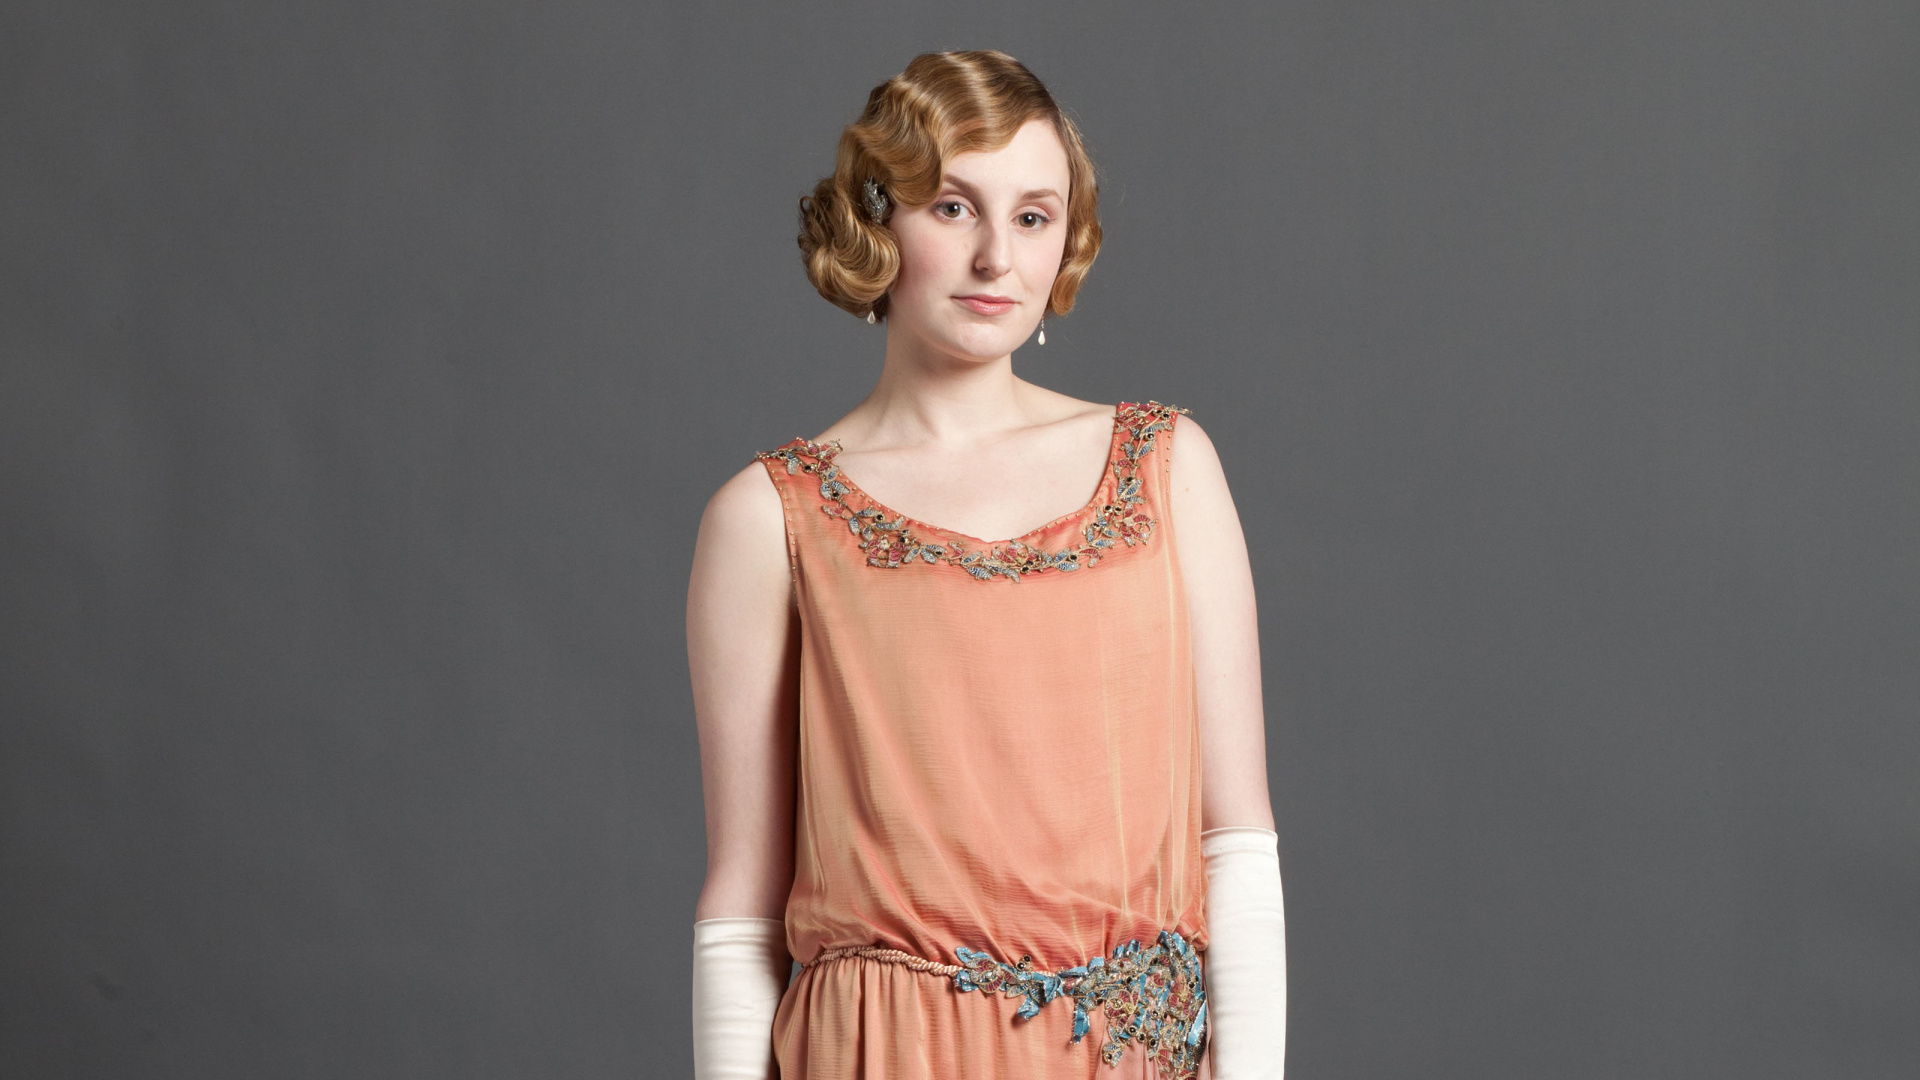 Laura Carmichael, Lady Edith Crawley, Downton Abbey, Dress, Clothing. Wallpaper in 1920x1080 Resolution